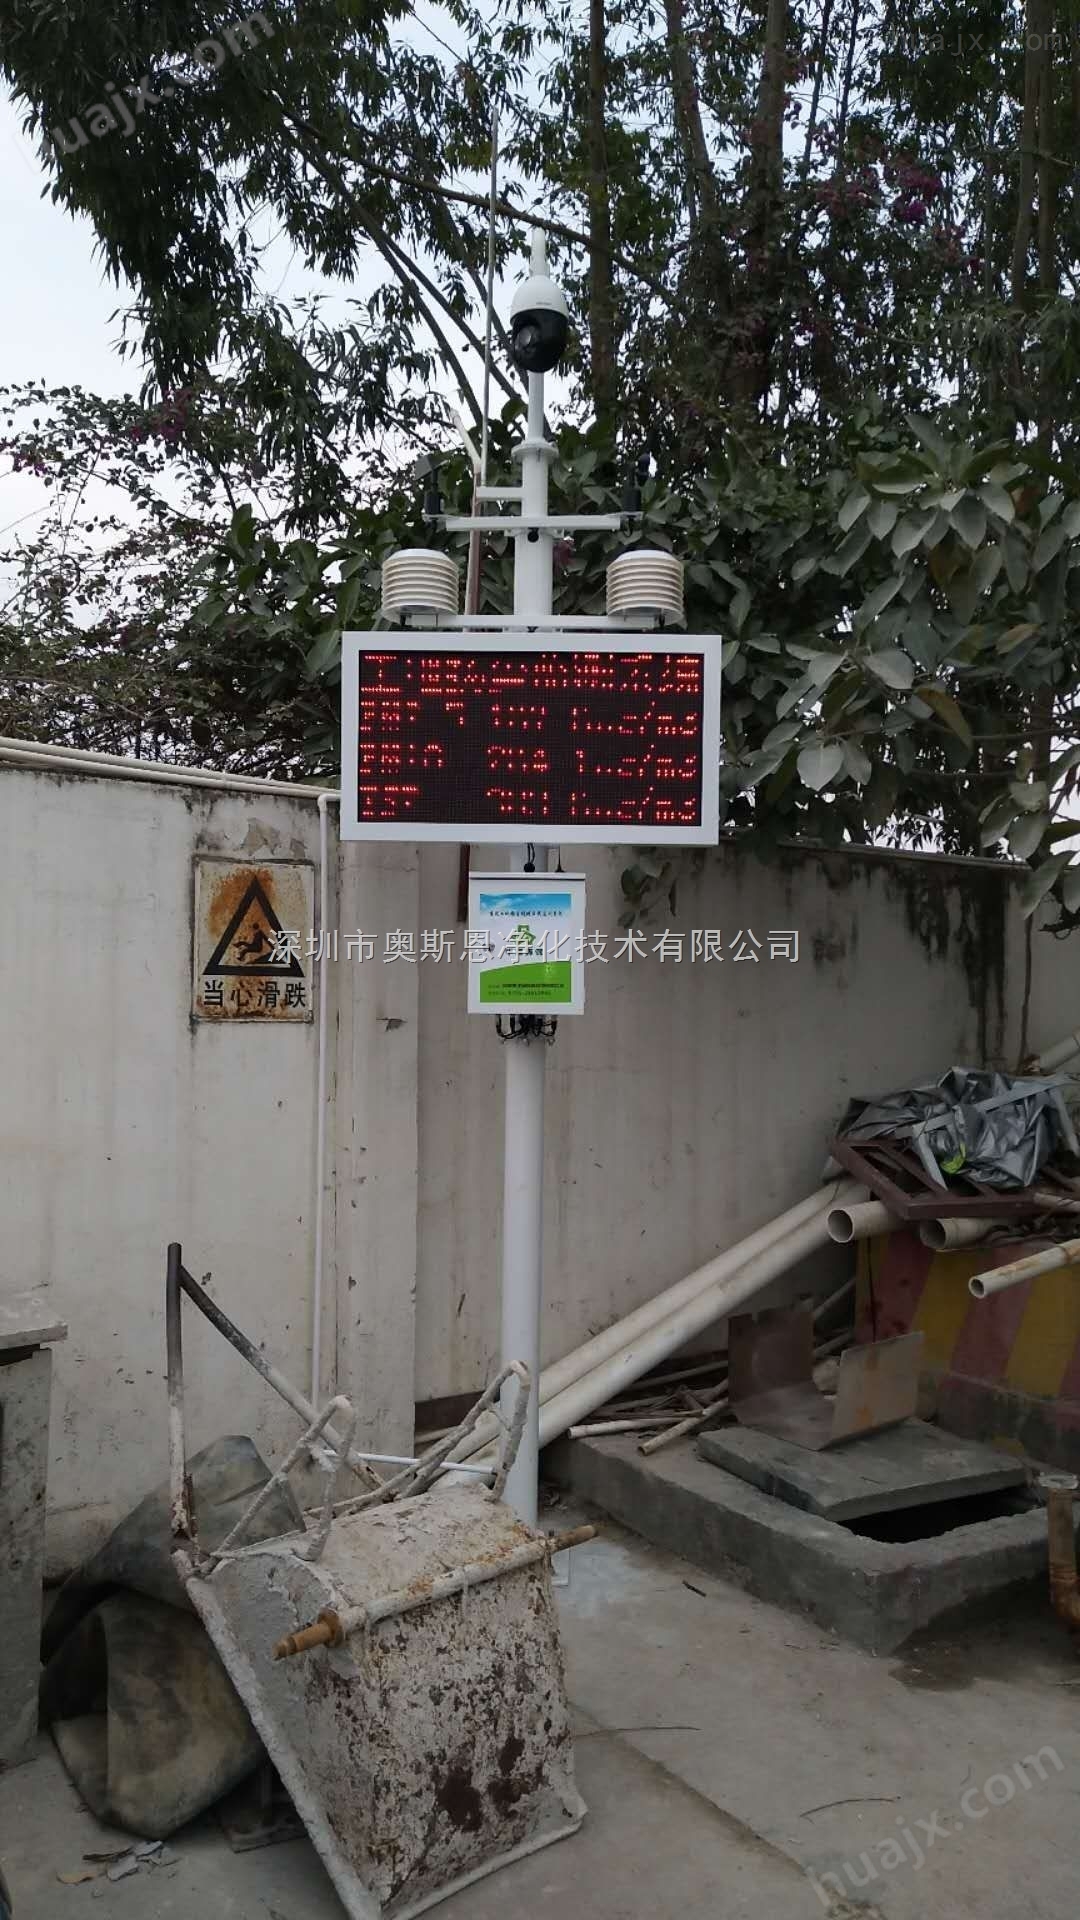 深圳大气污染扬尘颗粒物实时在线监测设备包对接监管平台